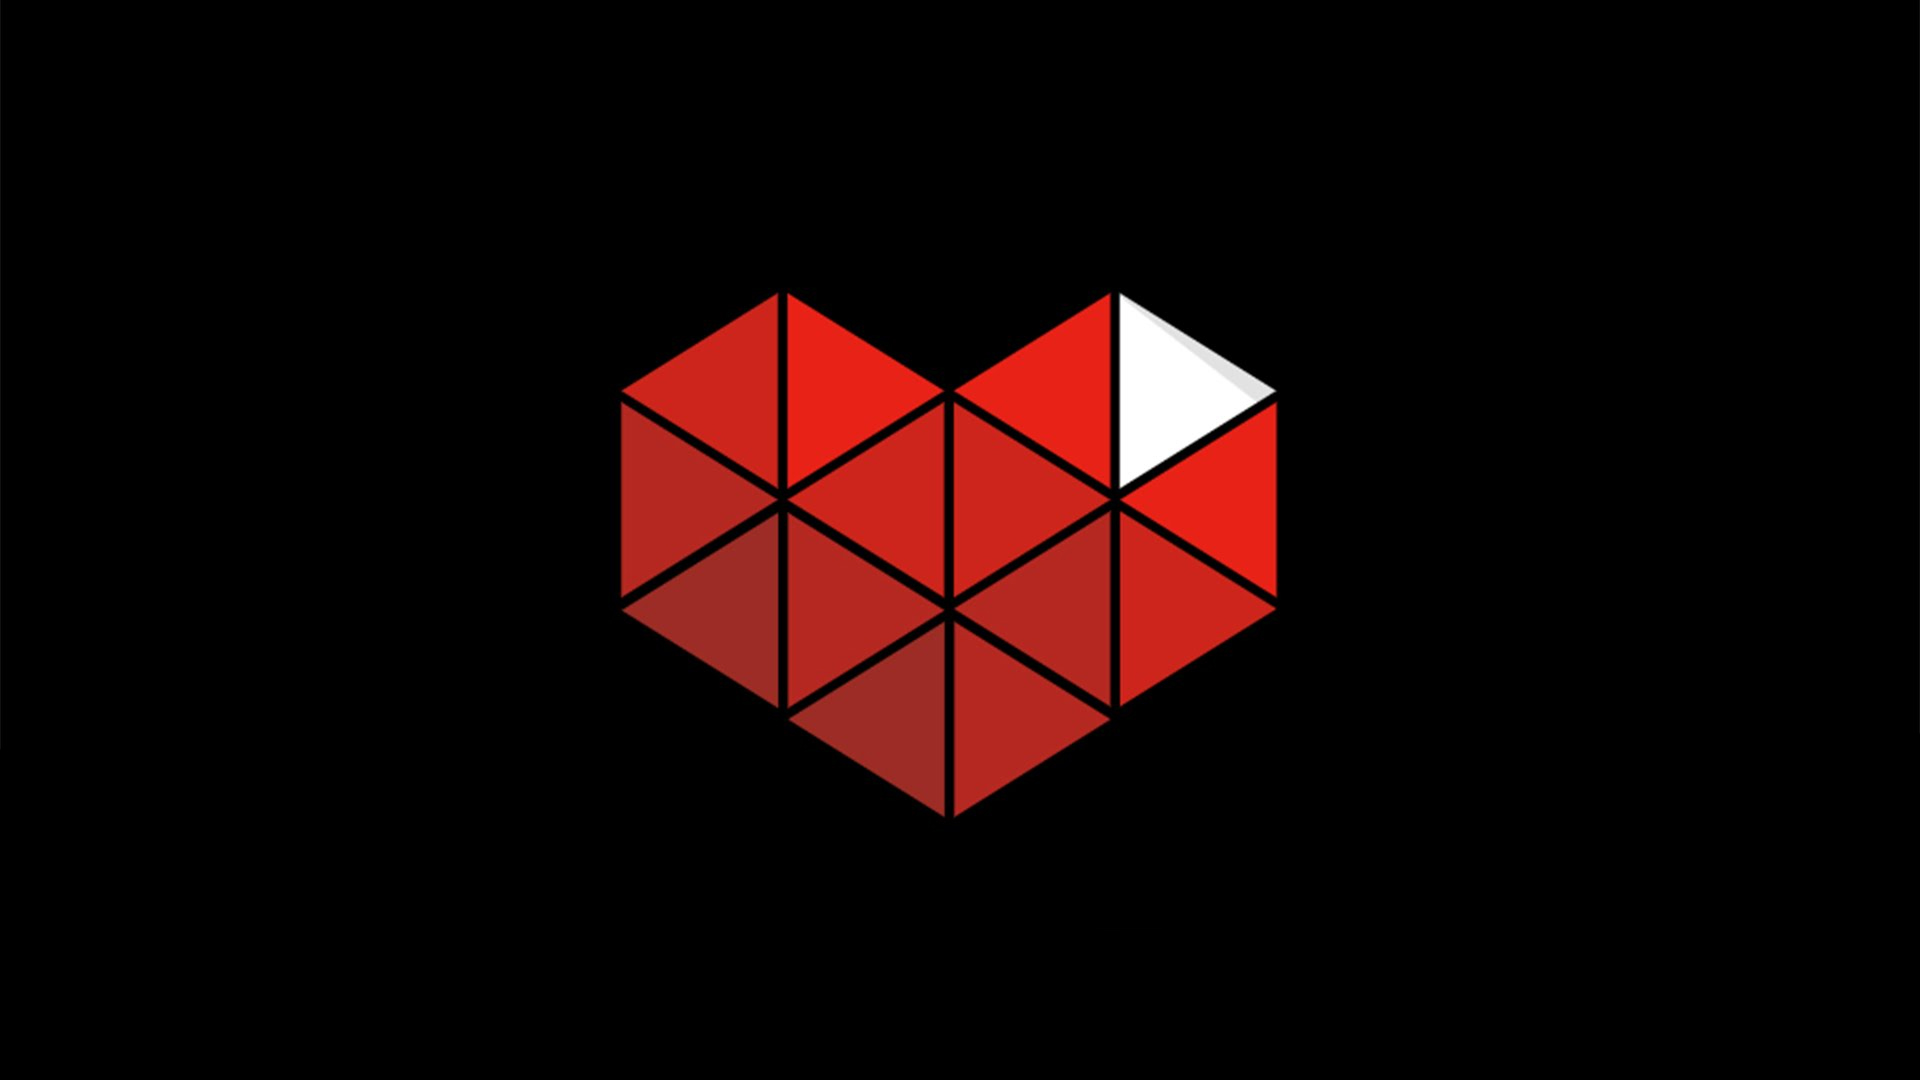 youtube gaming wallpaper,red,logo,symmetry,pattern,design